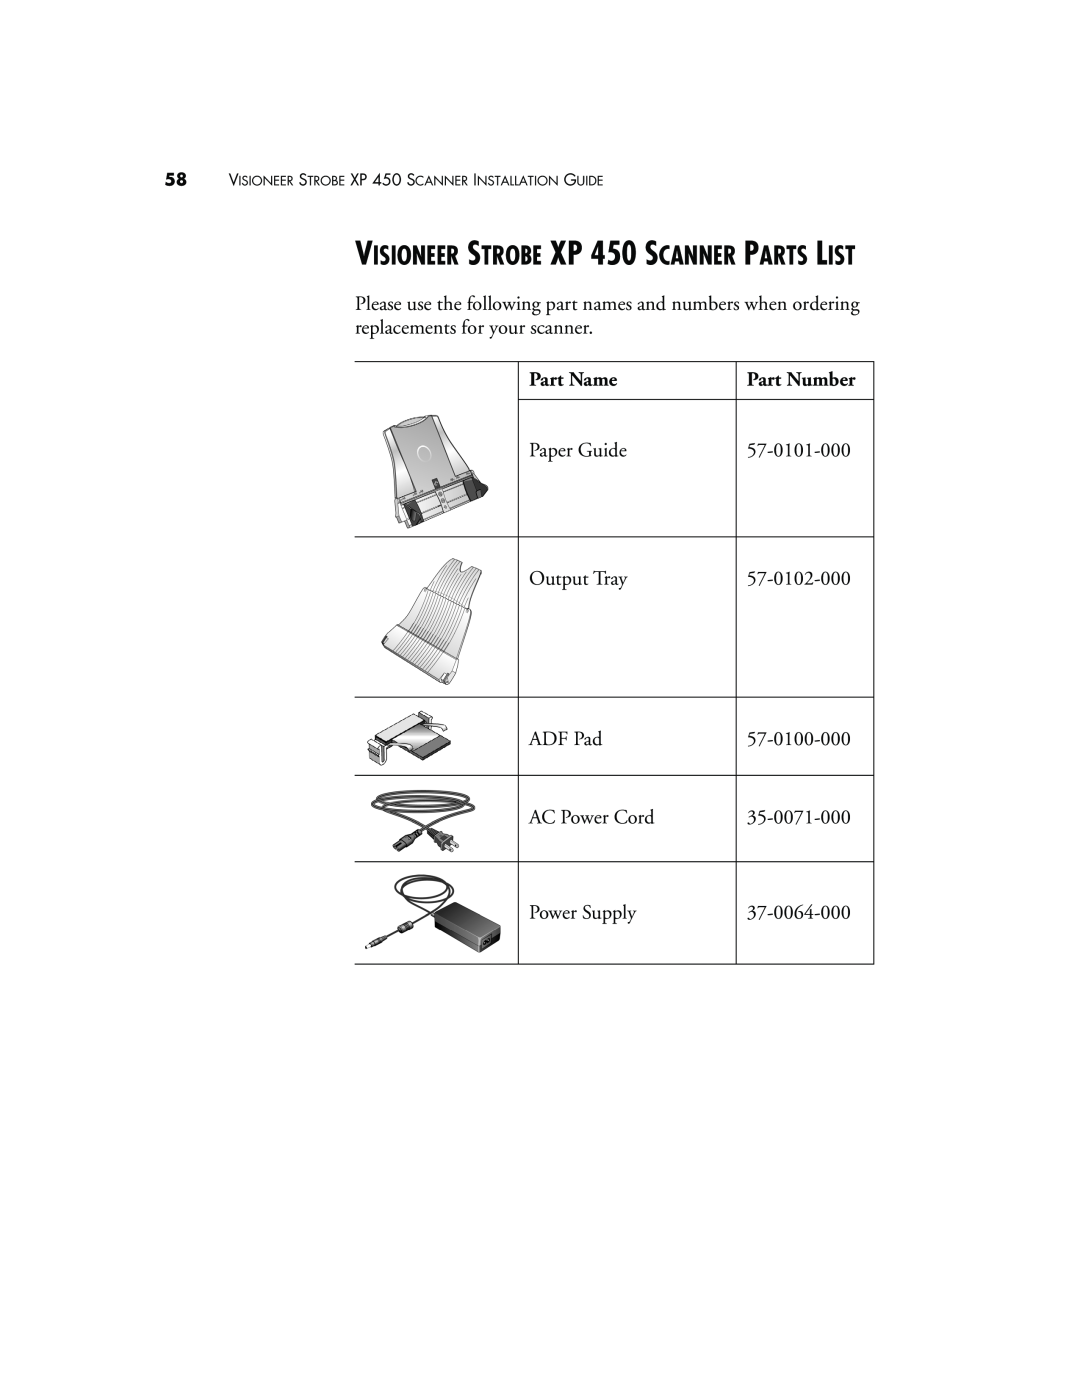 Visioneer manual VISIONEER STROBE XP 450 SCANNER PARTS LIST, Part Name, Part Number 